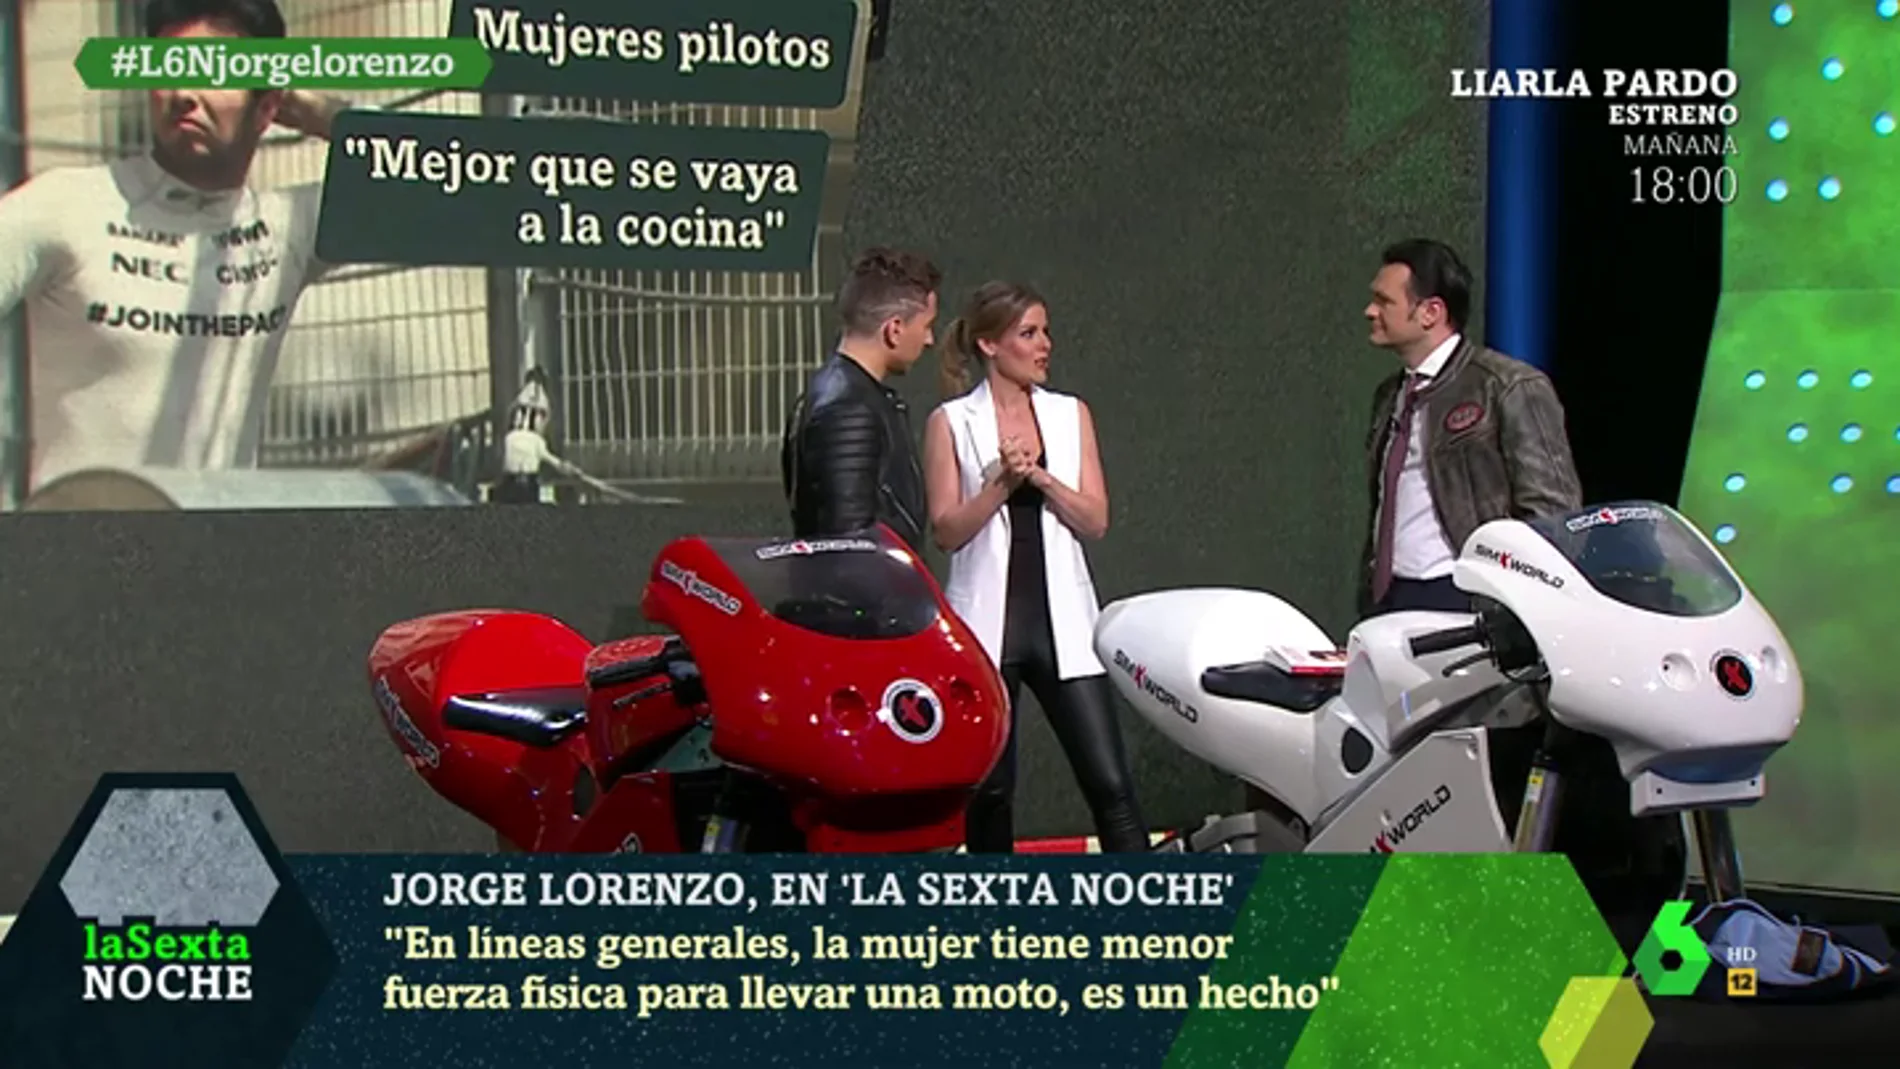 Jorge Lorenzo: "En líneas generales, la mujer tiene menor fuerza física para llevar una moto, es un hecho"